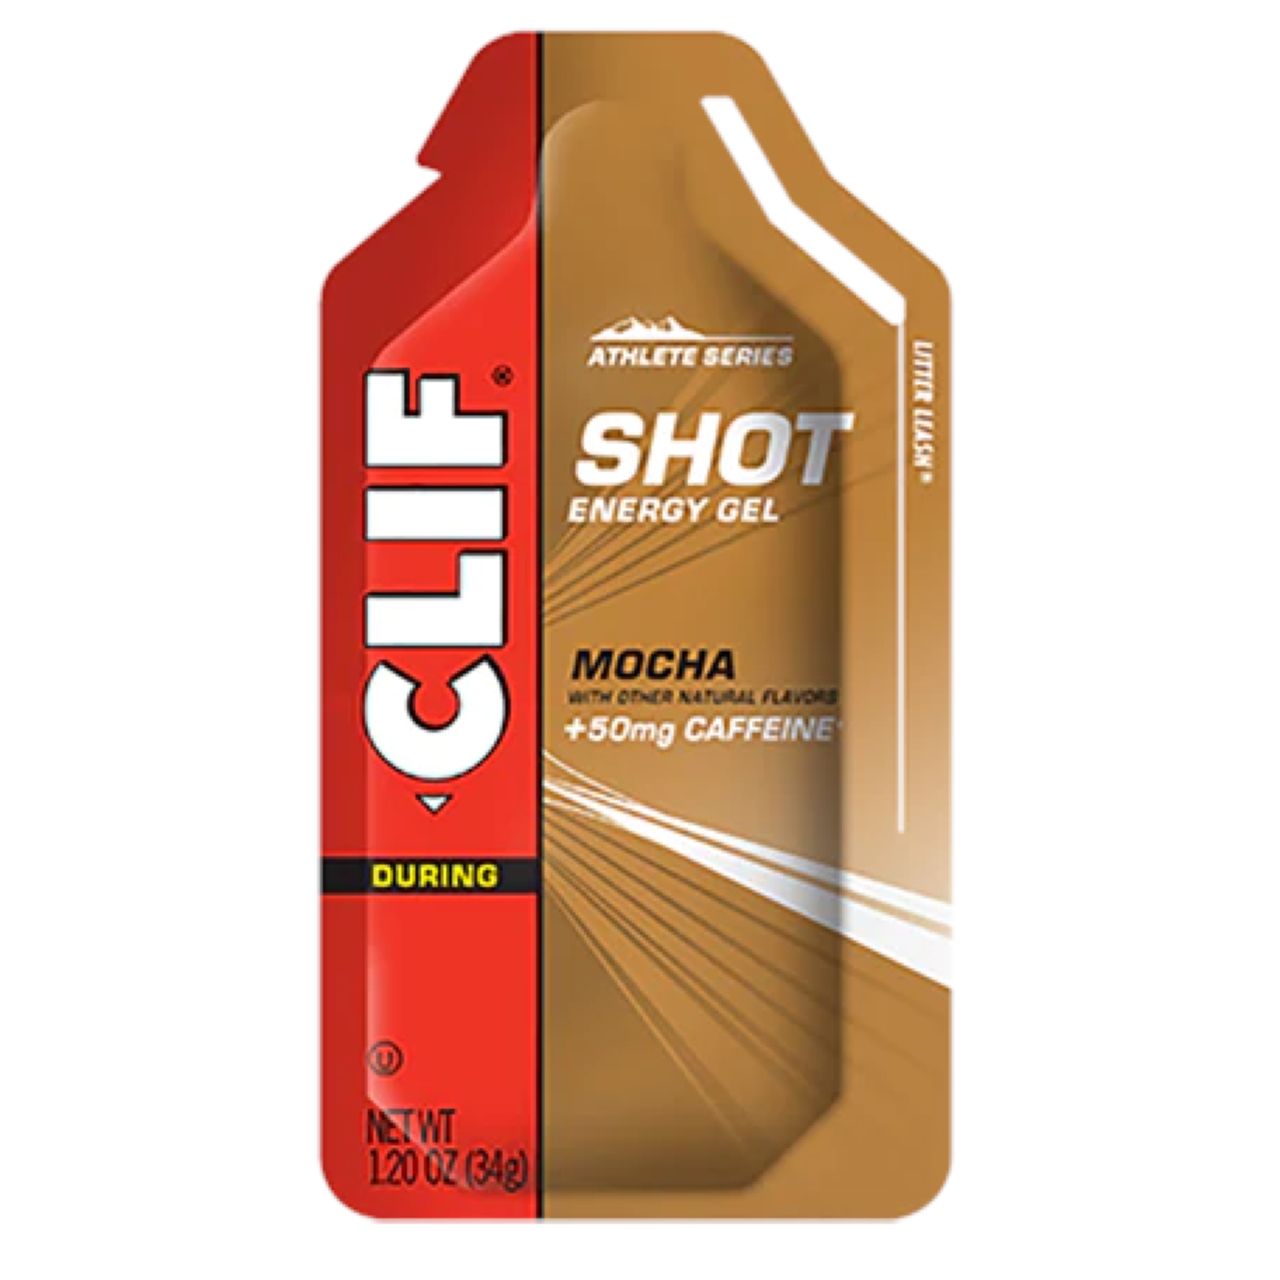 Clif Shot Energy Gel - Mocha with Caffeine